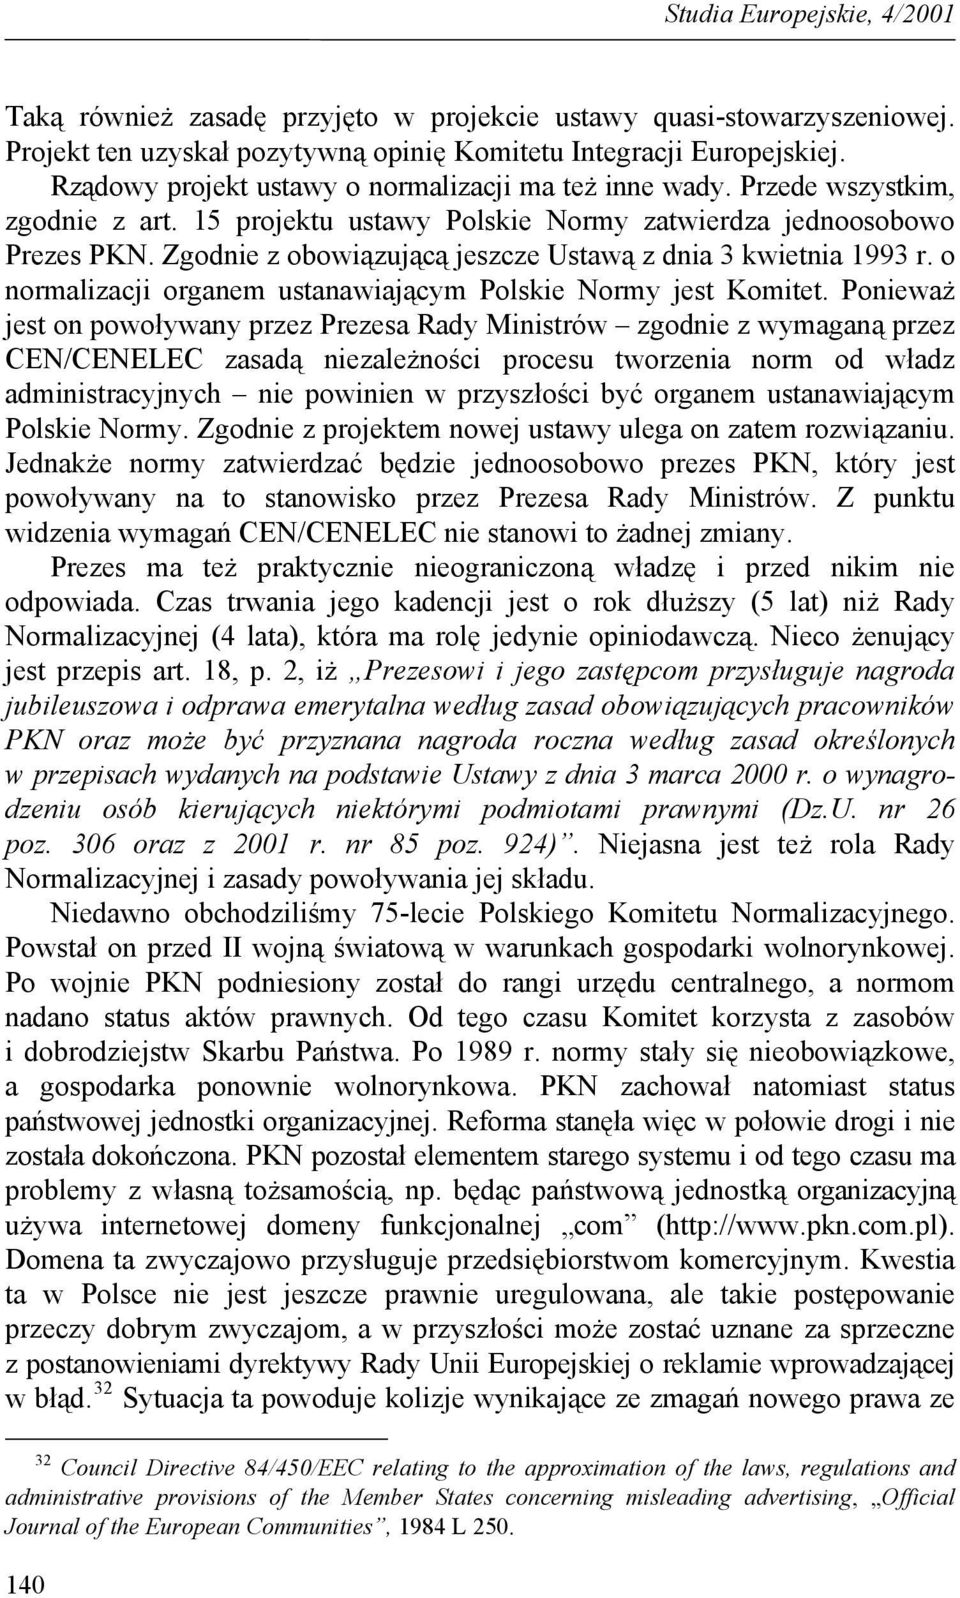 Zgodnie z obowiązującą jeszcze Ustawą z dnia 3 kwietnia 1993 r. o normalizacji organem ustanawiającym Polskie Normy jest Komitet.